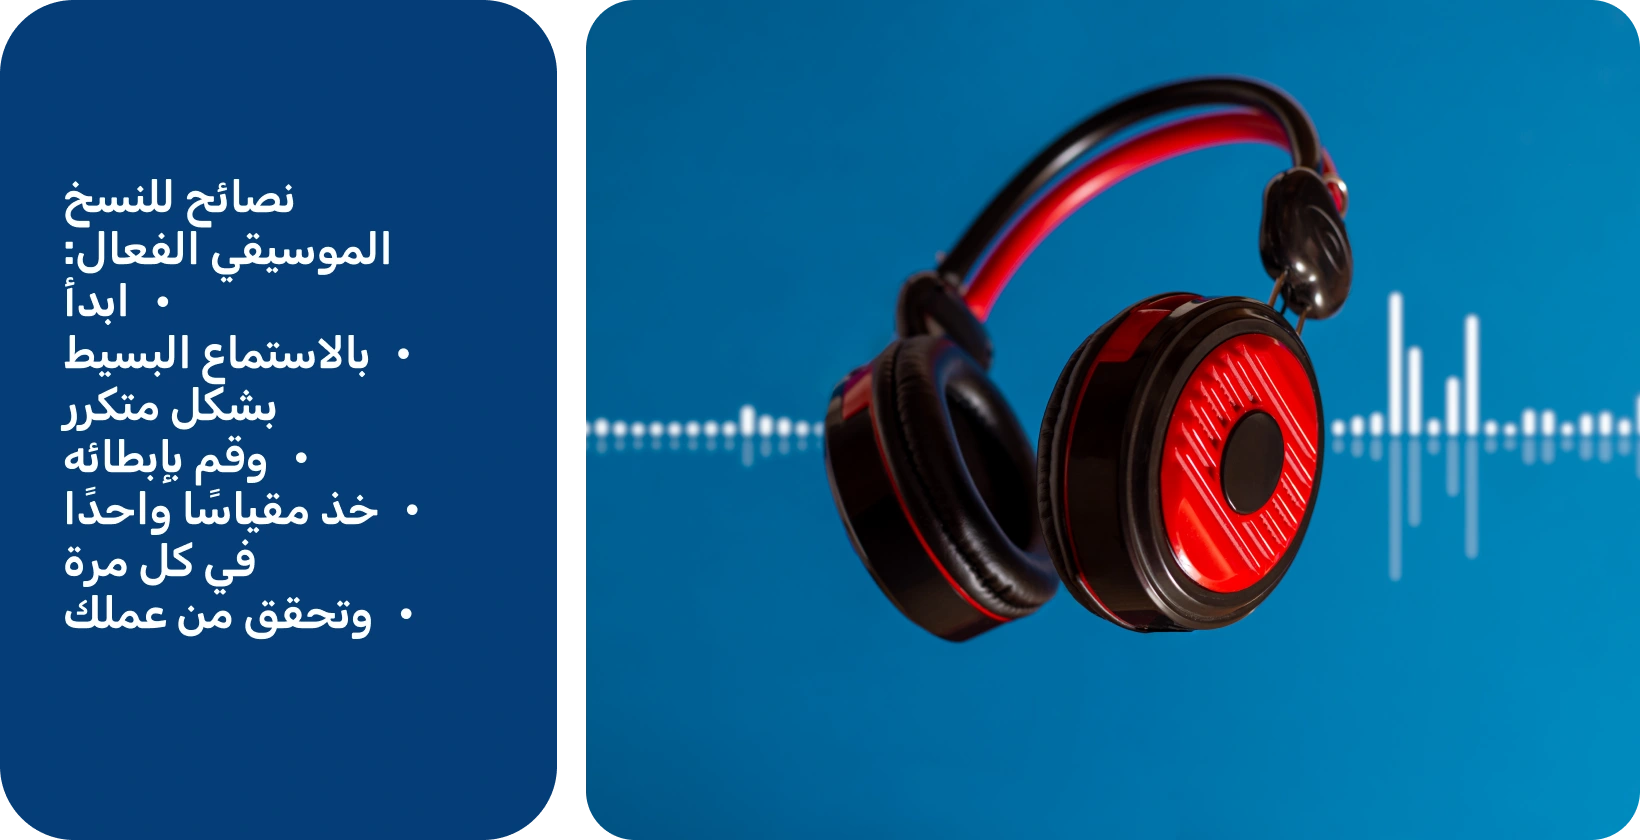 سماعات الرأس على خلفية شكل موجة ، تمثل أدوات لتحسين نسخ الموسيقى من خلال الاستماع المركز والمتكرر.